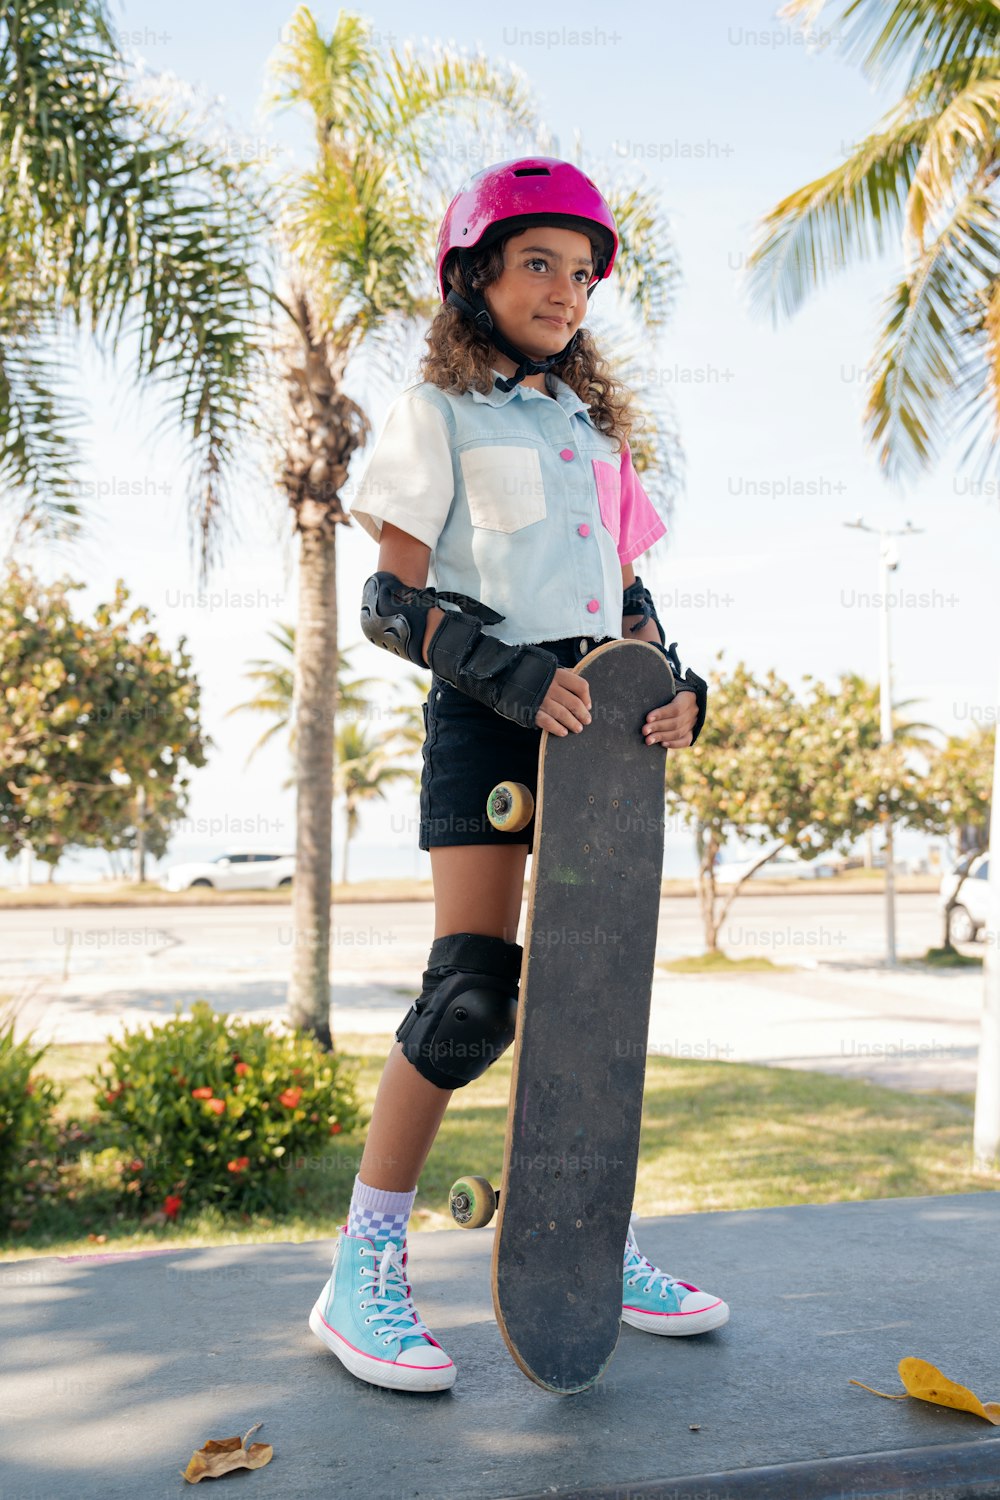 歩道でスケートボードを持つ少女